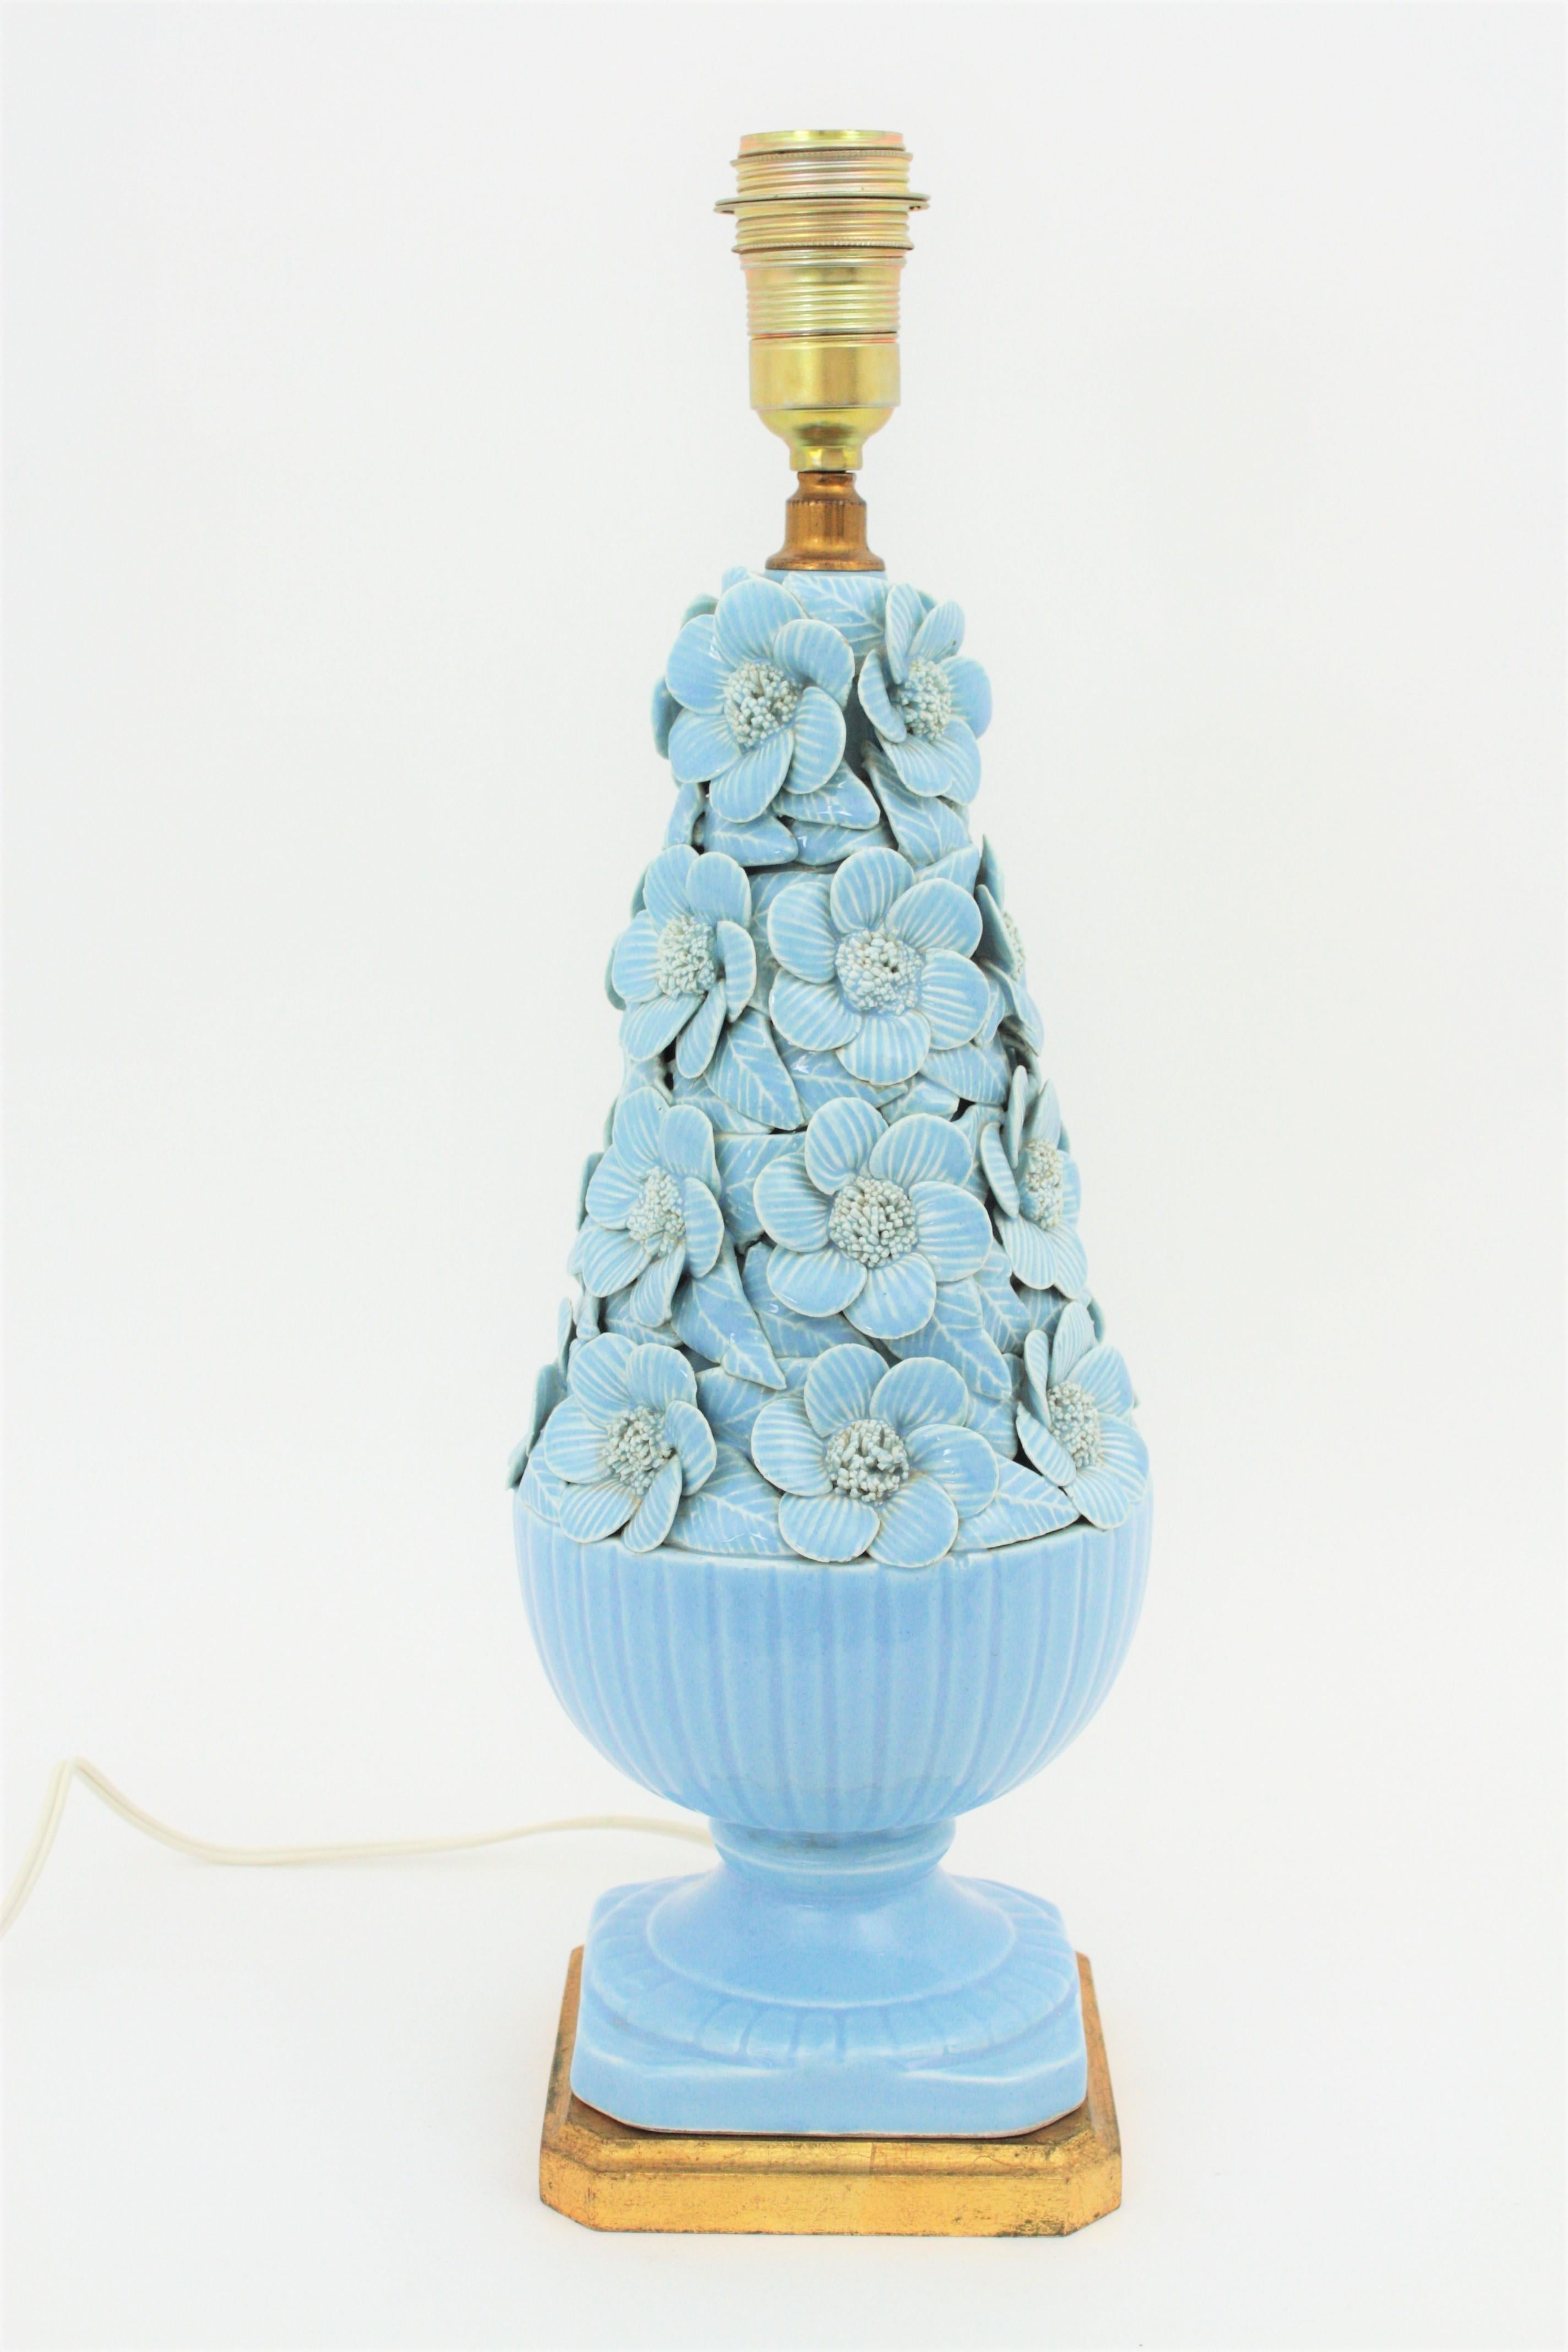 Une spectaculaire lampe en céramique Manises à glaçure bleue avec des motifs floraux et un piédestal en bois doré. Manises:: ( Espagne ) a une longue tradition de production de céramiques:: de majoliques:: de terres cuites et de porcelaines.